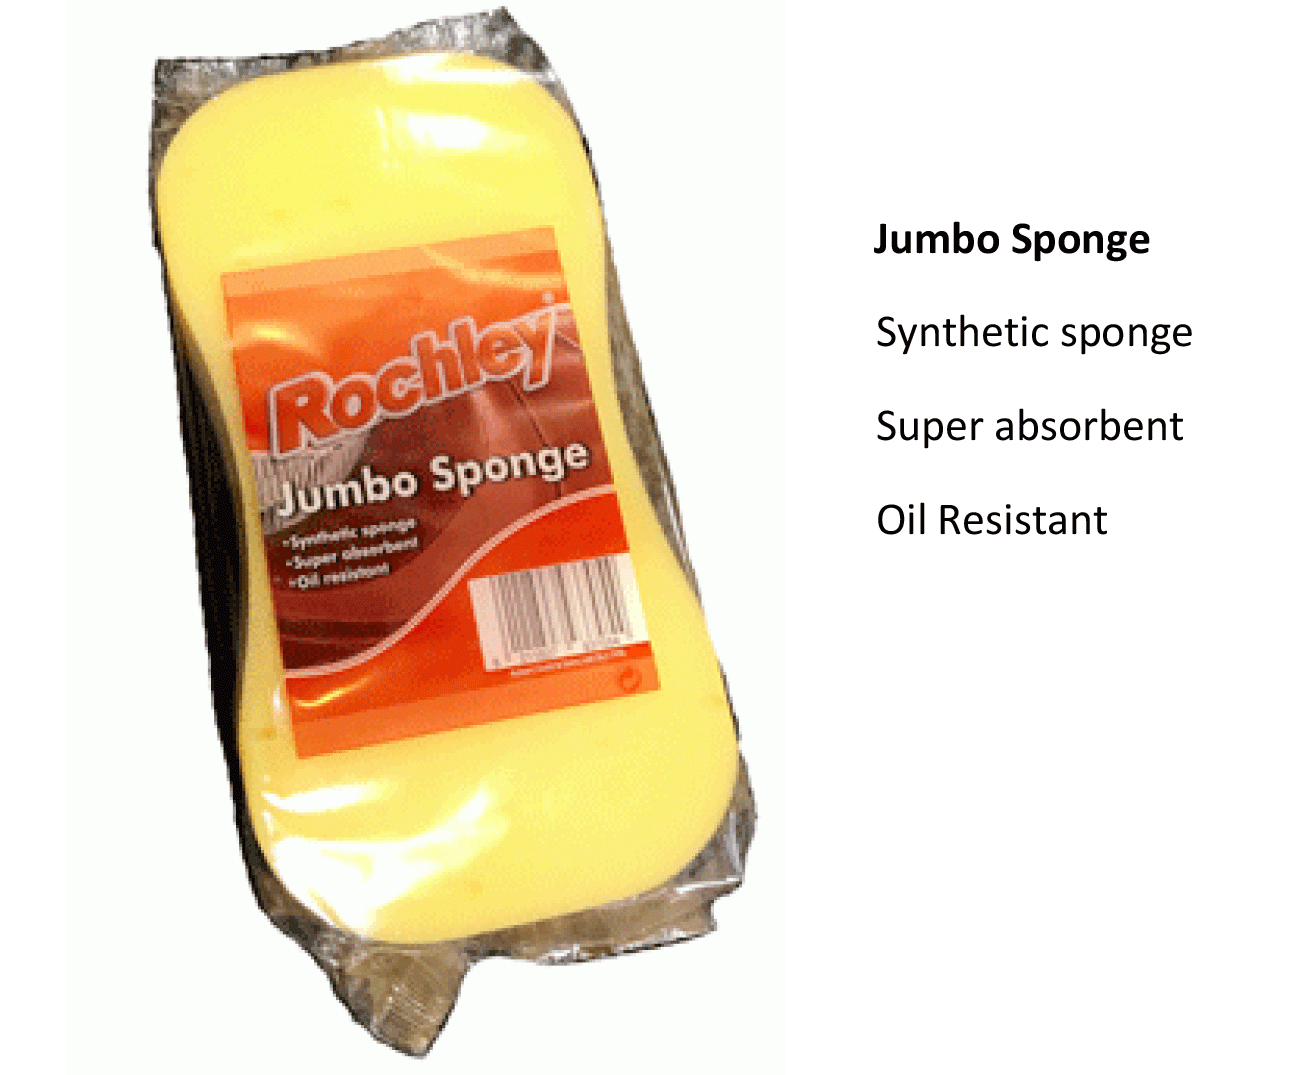 Jumbo-sponge-info-to-upload.gif#asset:92